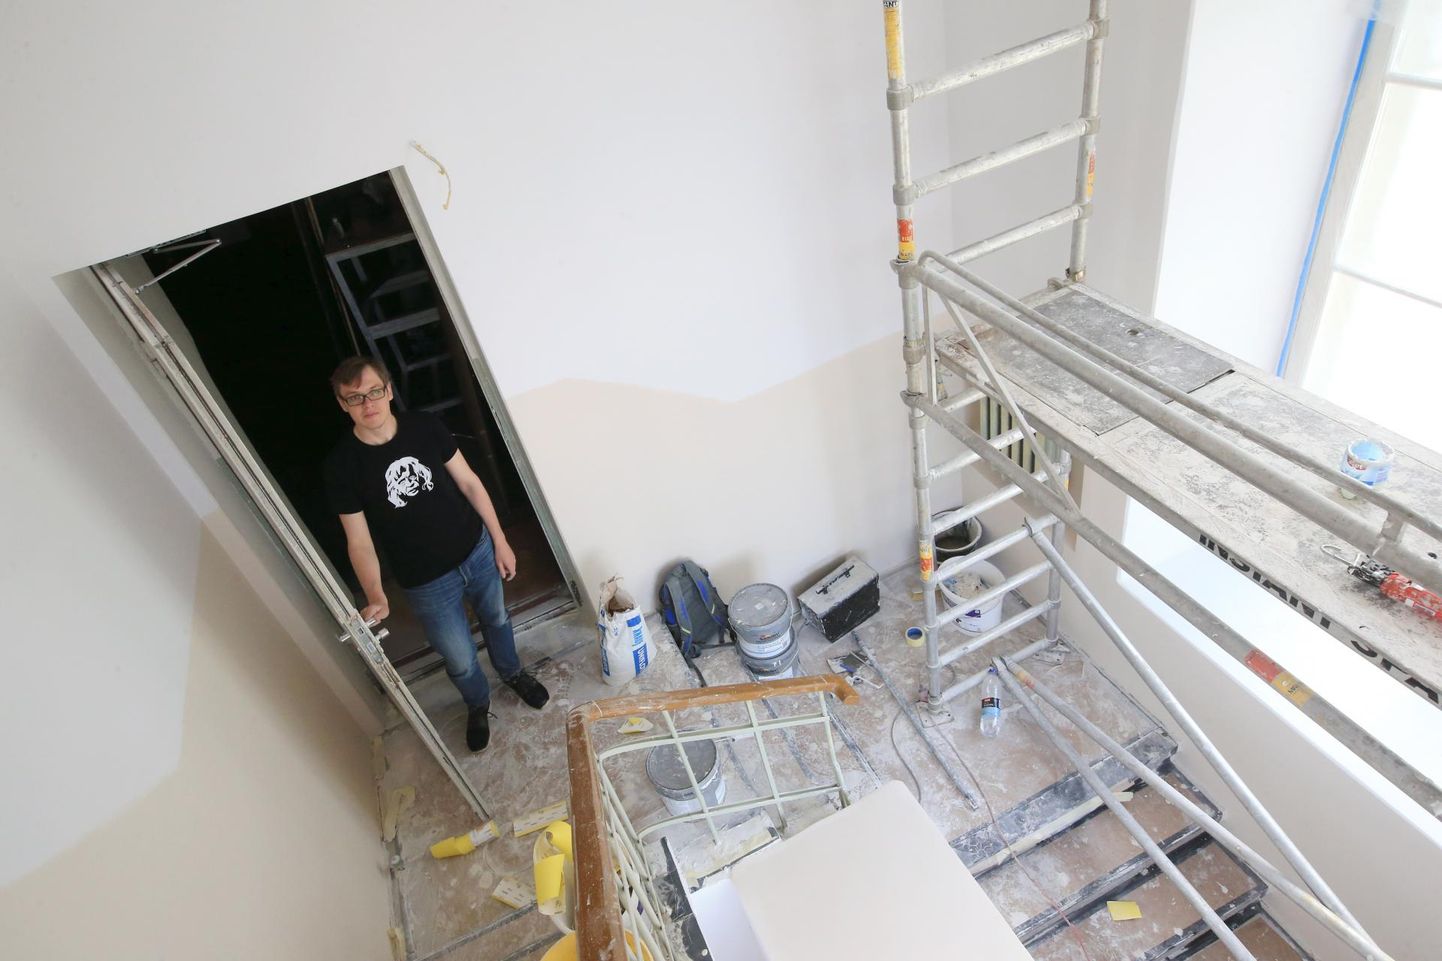 Elektriteatri juht Andres Kauts plaanib kino taas avada 1. juulil. Seni tehakse maja esimese korruse trepikojas väike uuenduskuur.